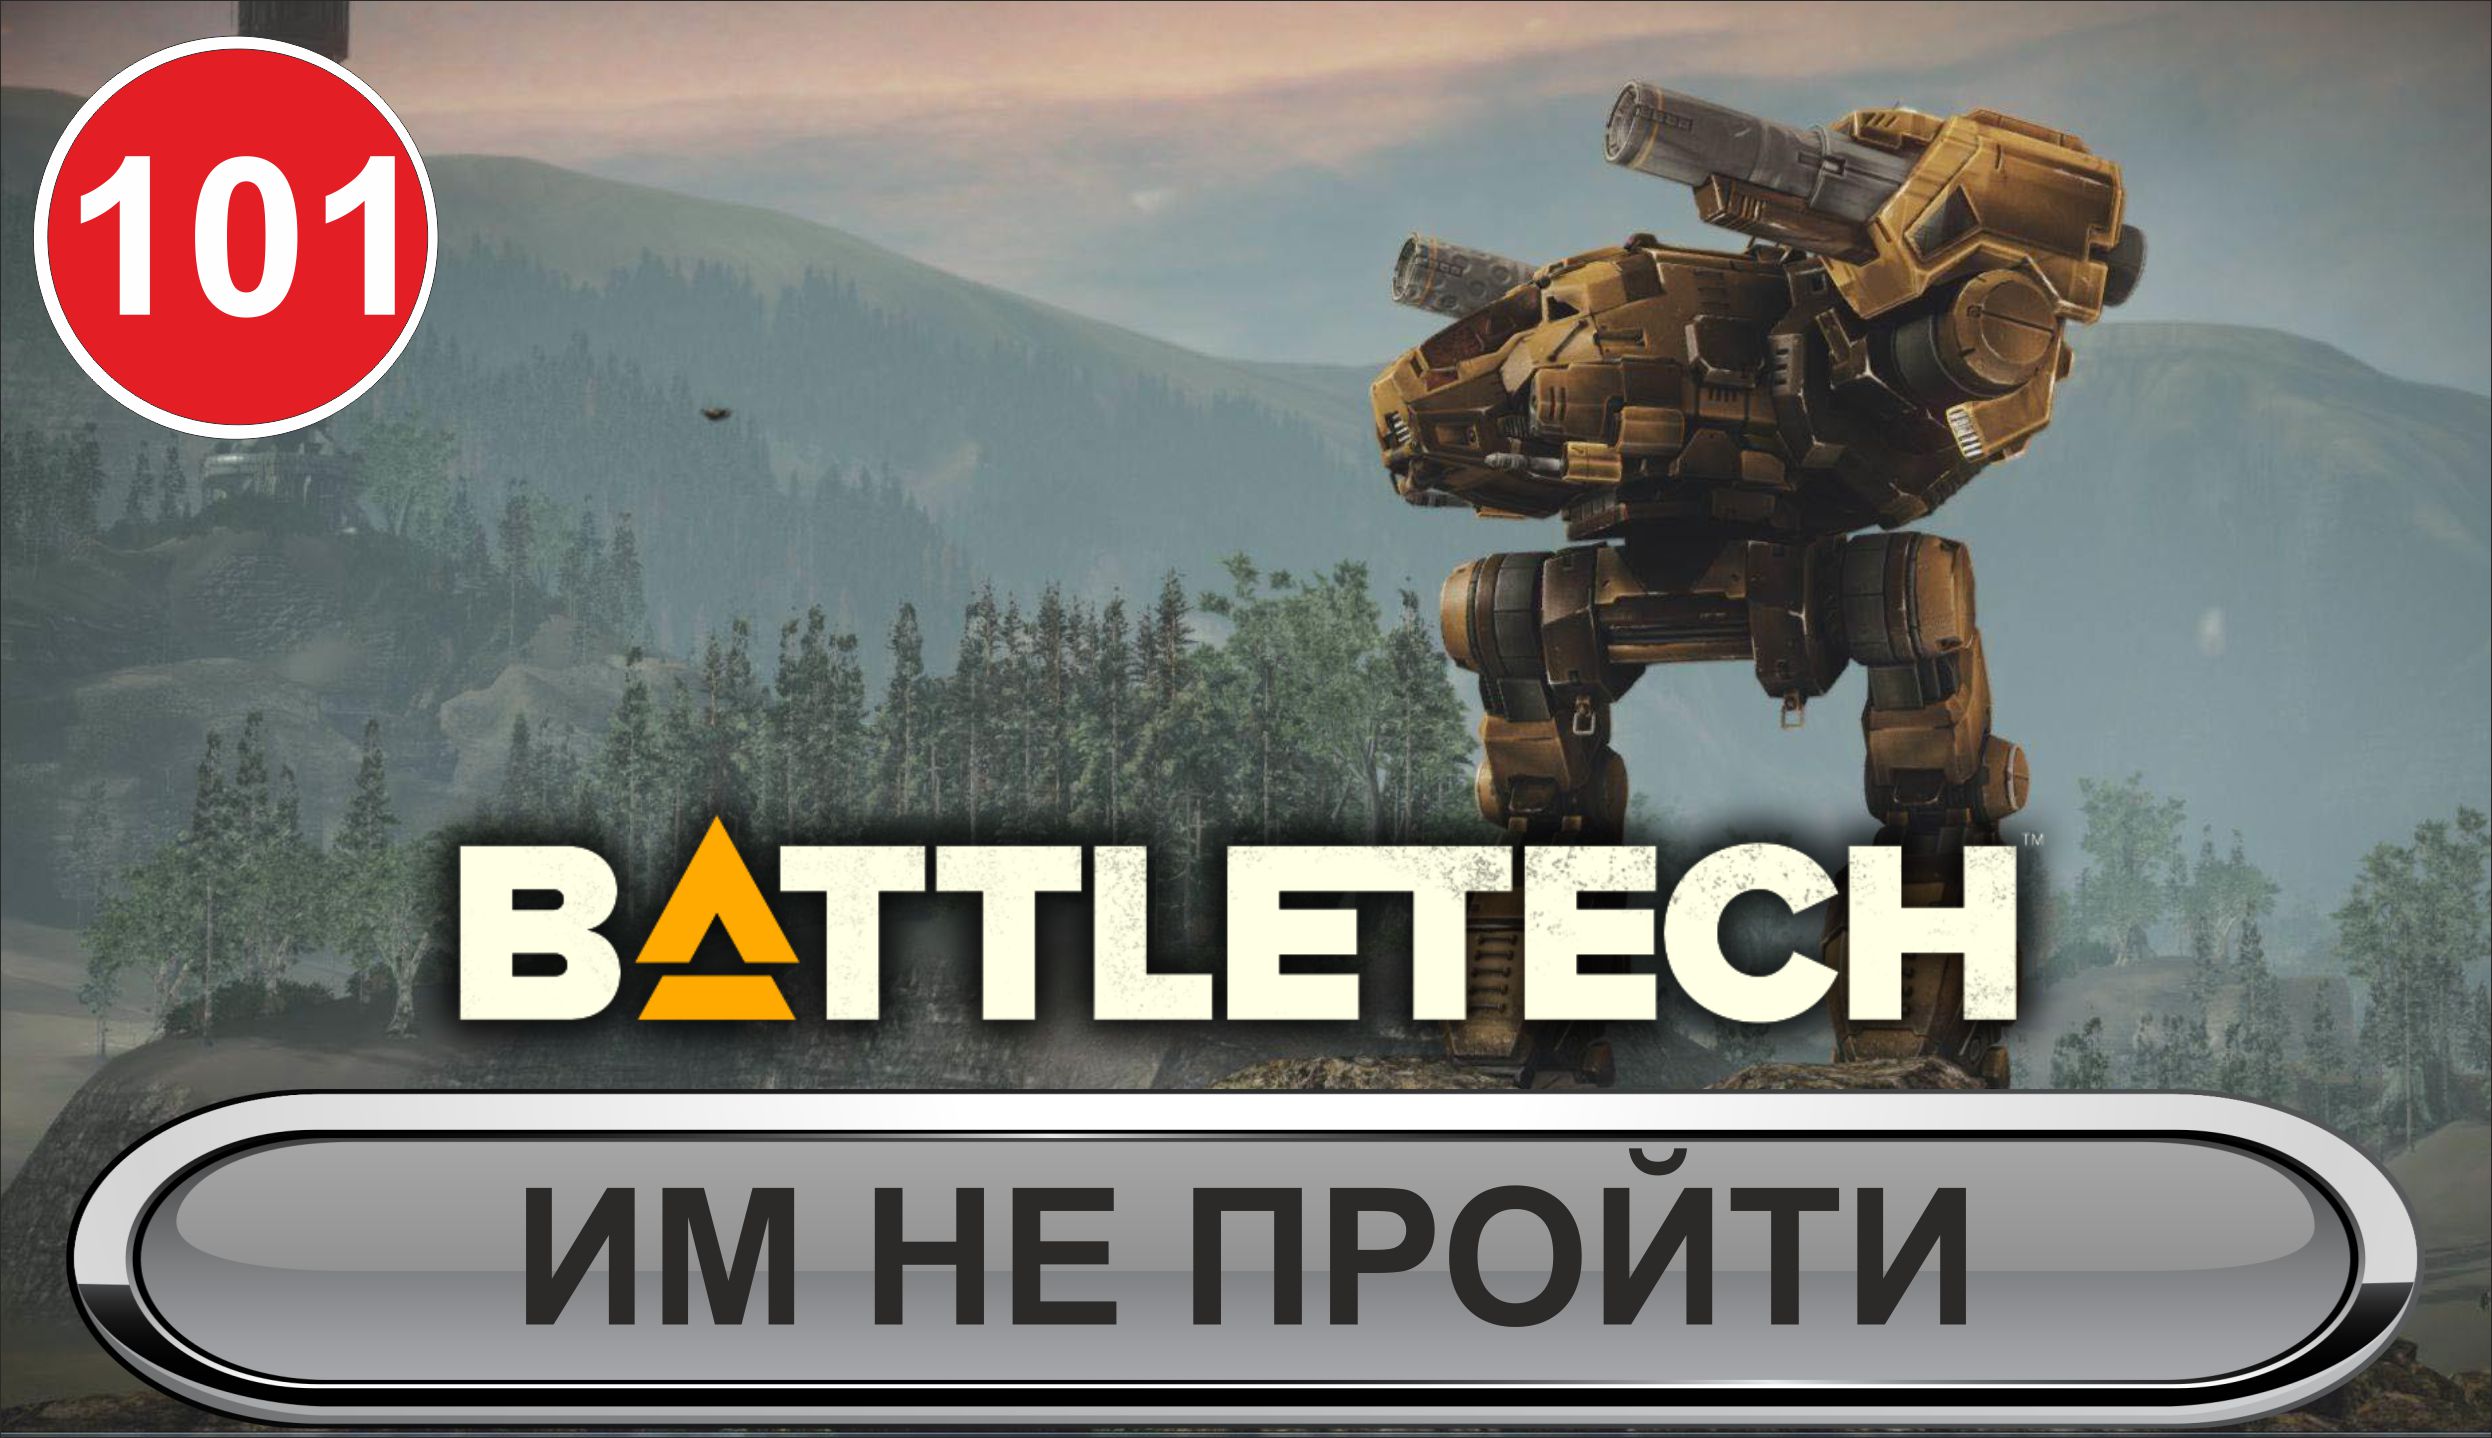 Battletech - Им не пройти